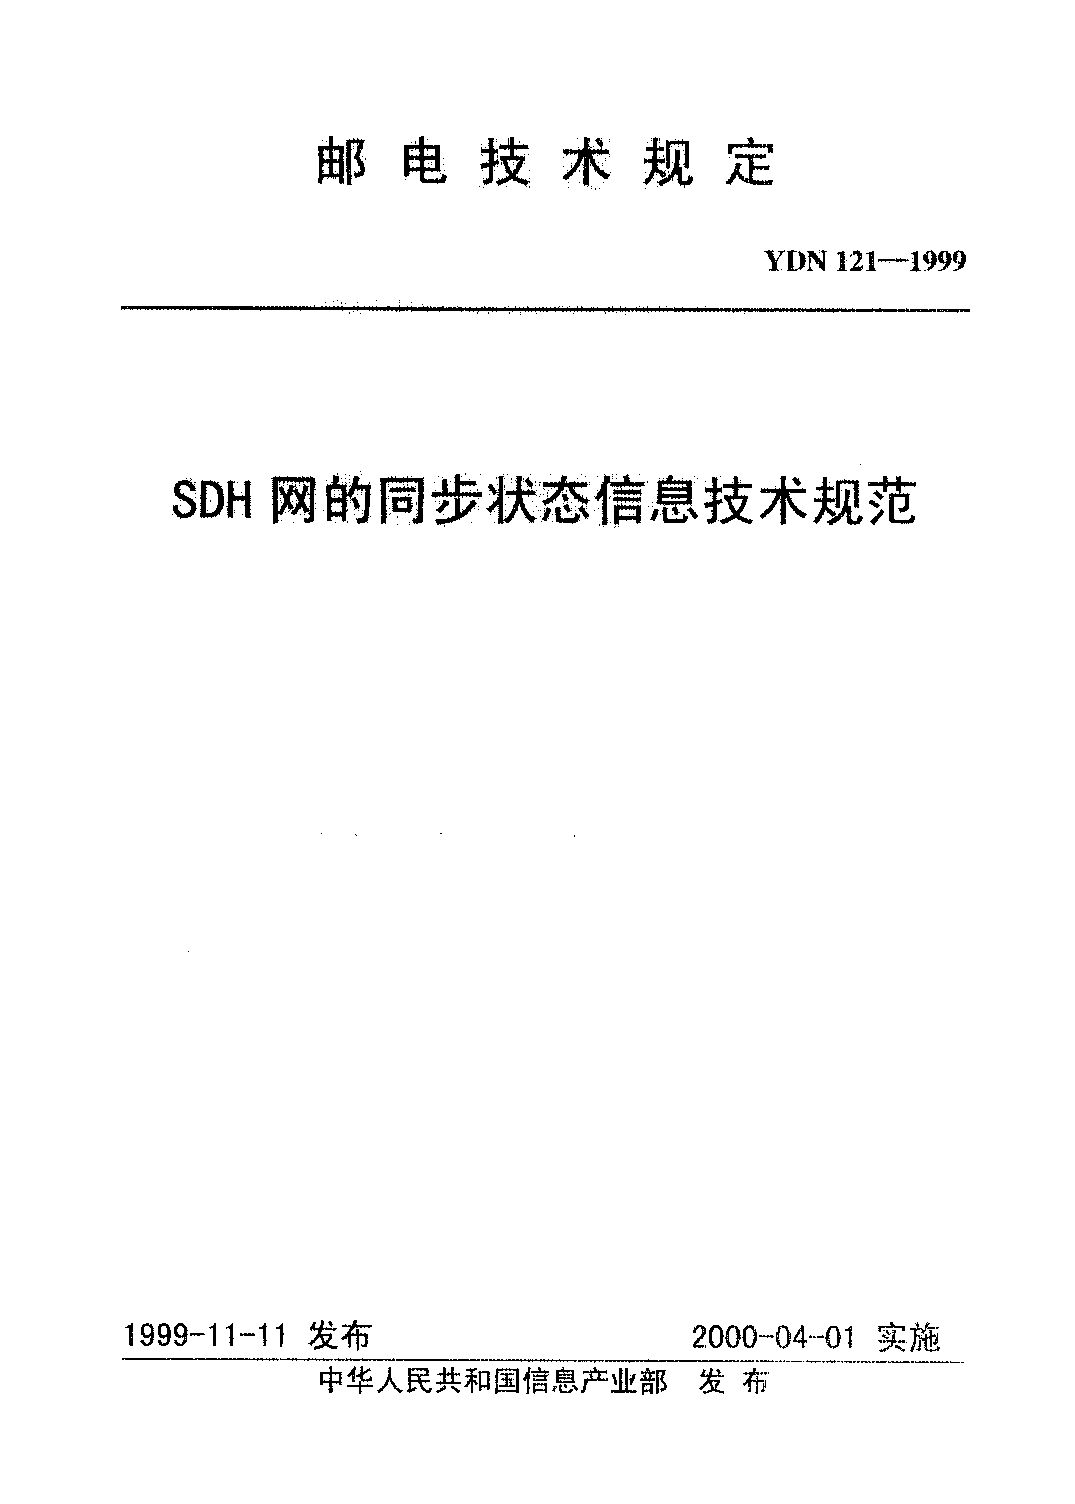 YDN 121-1999封面图